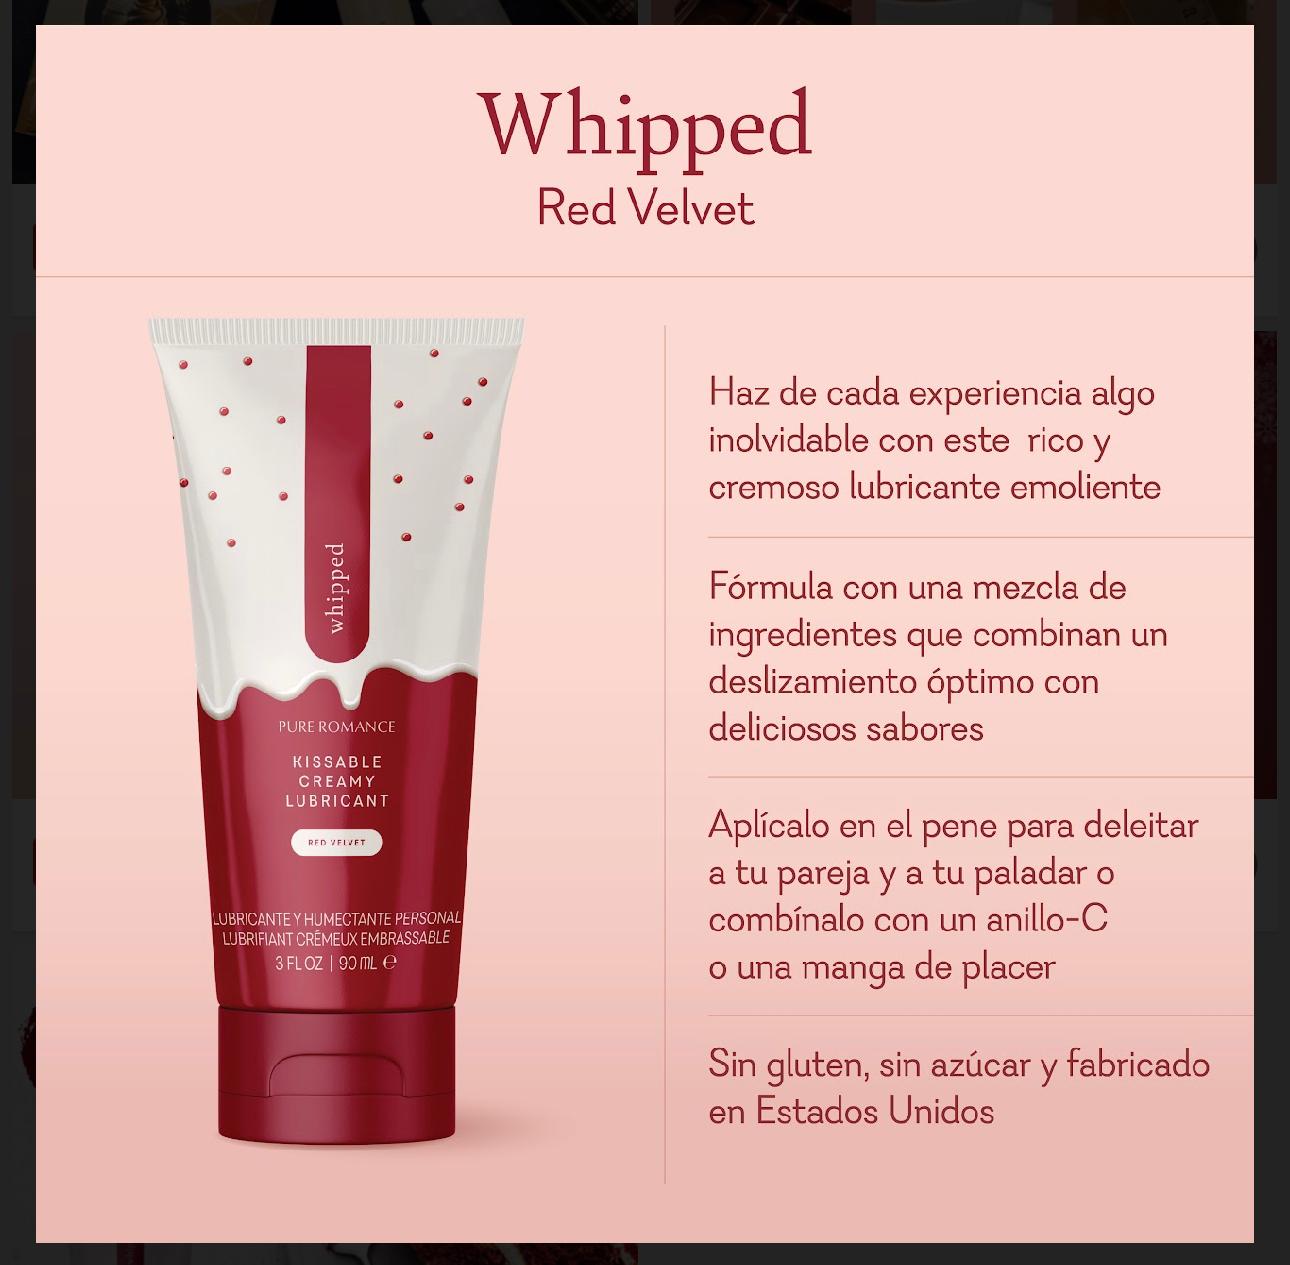 Whipped - Red Velvet